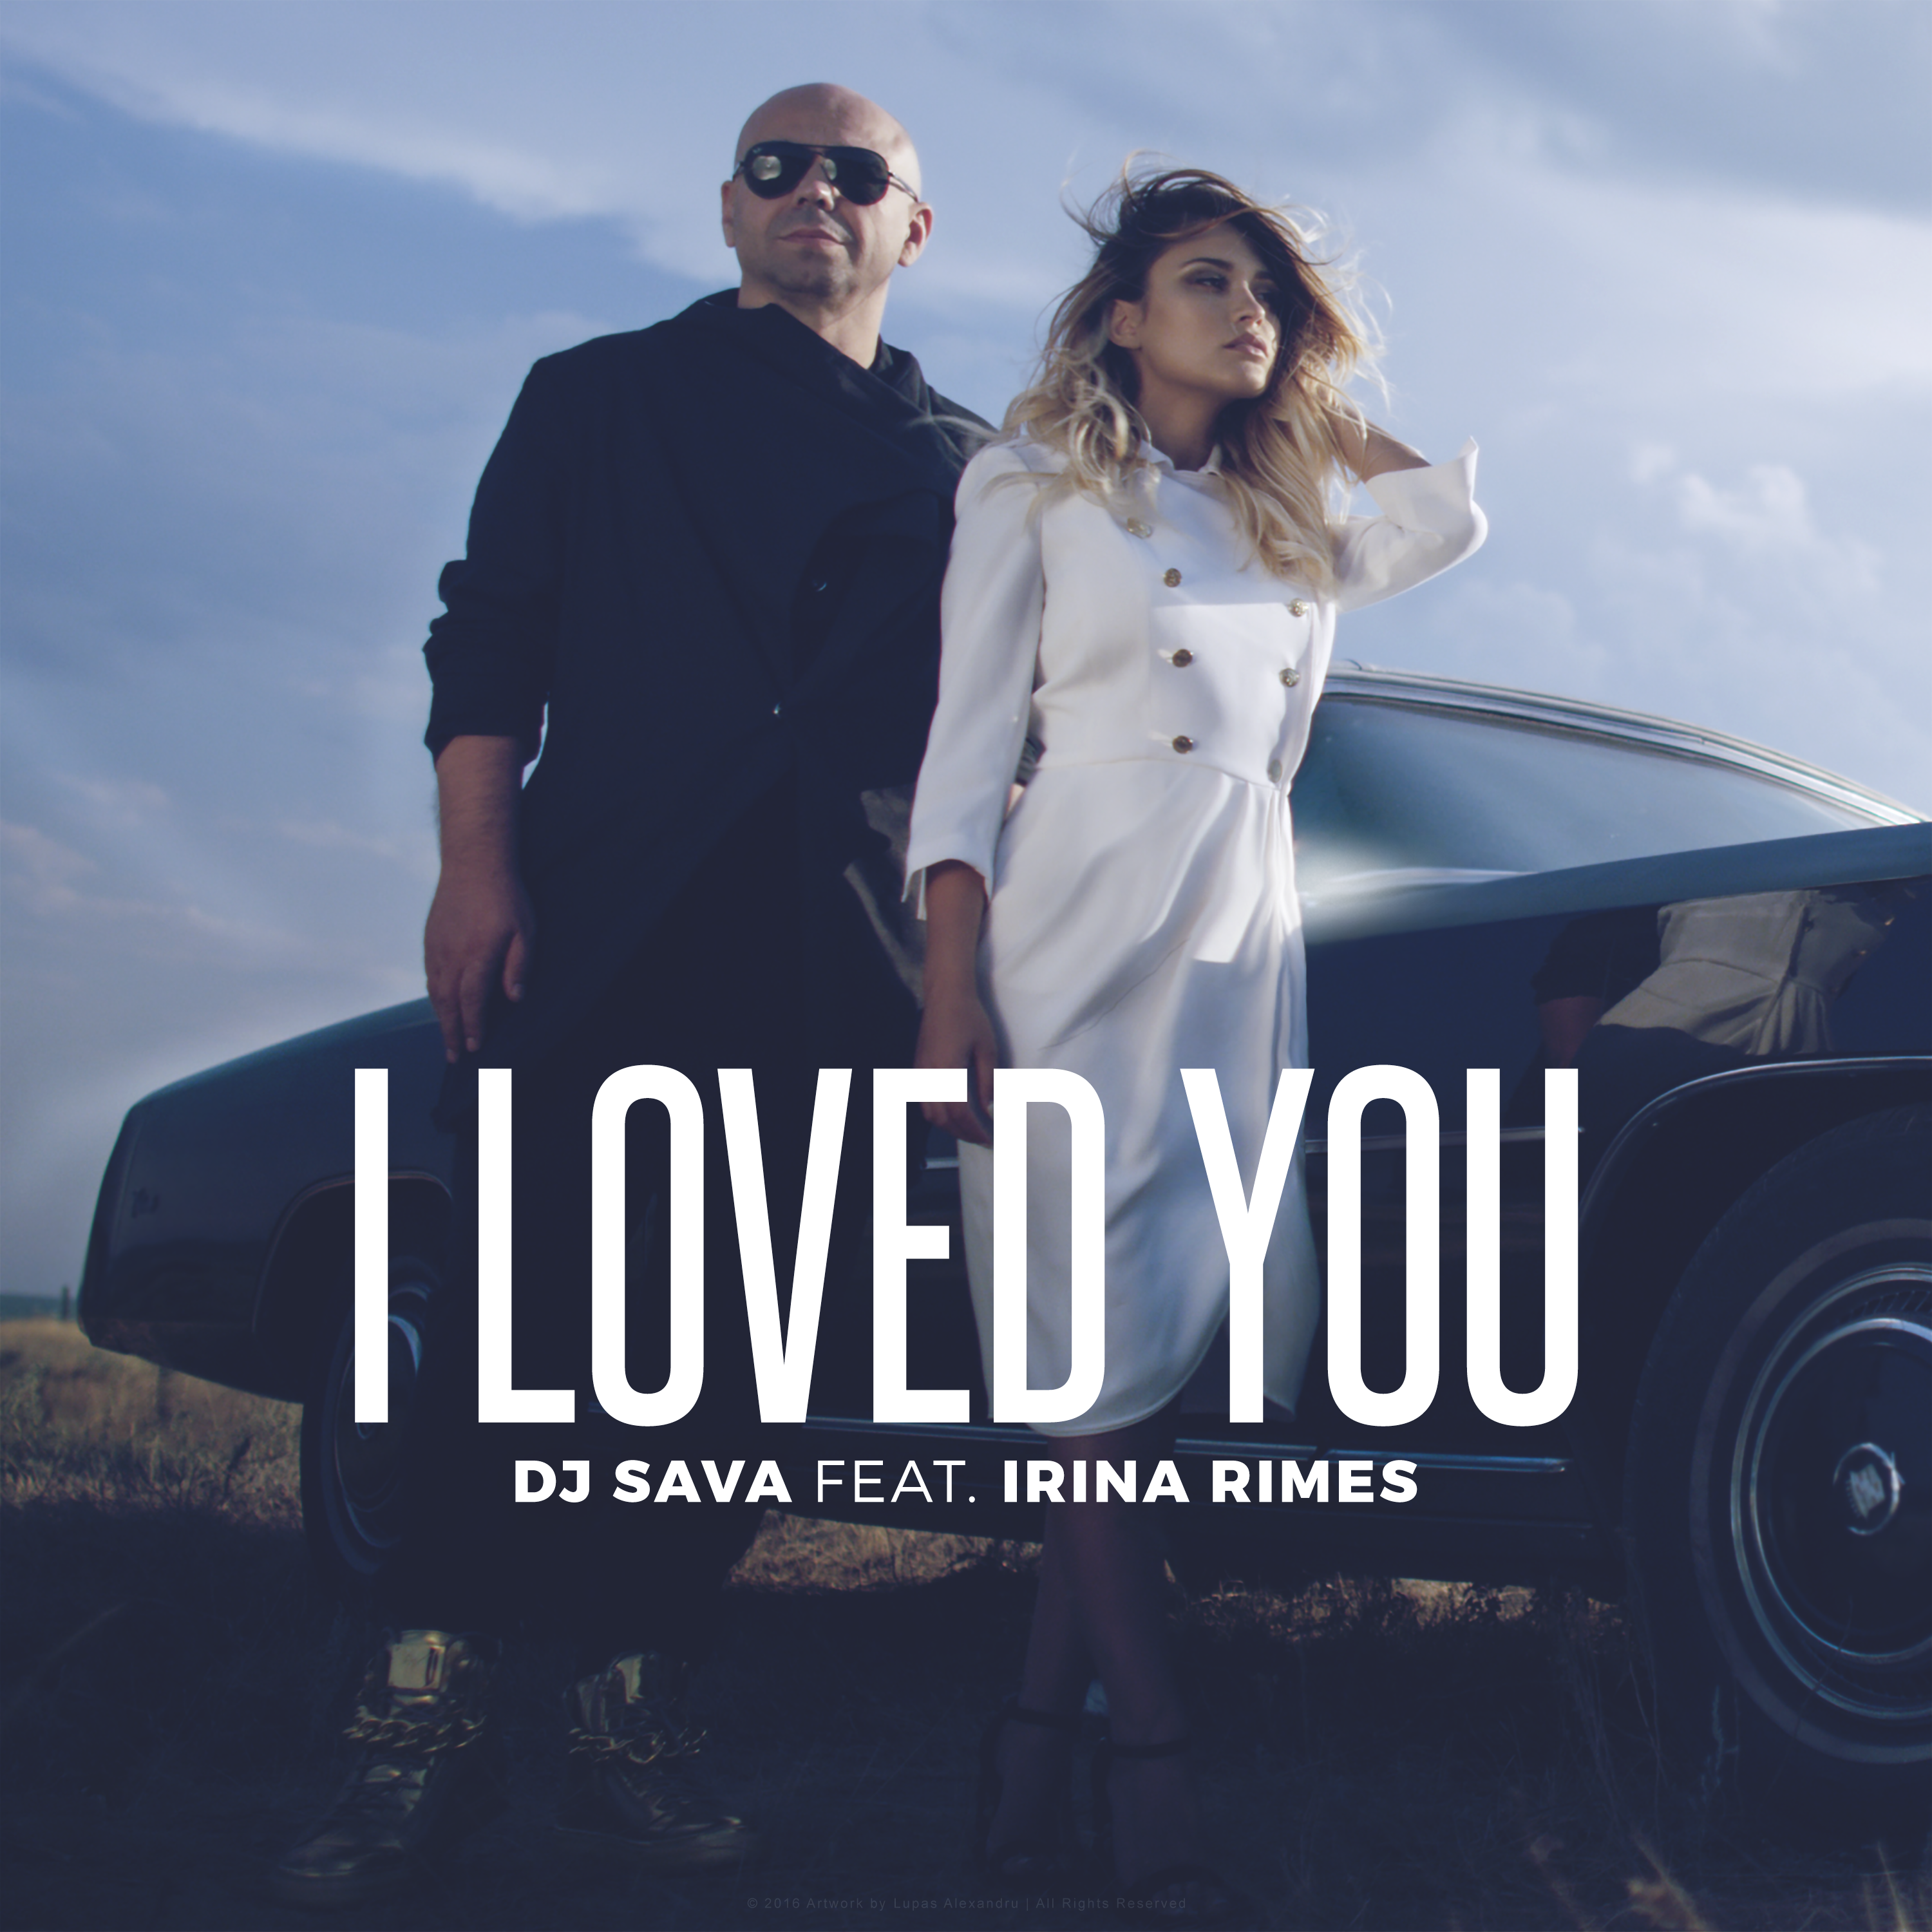 Dj irina. DJ Sava Irina i Loved you. I Loved you (feat. Irina Rimes) DJ Sava feat. Irina Rimes. Феат. Картинка feat.